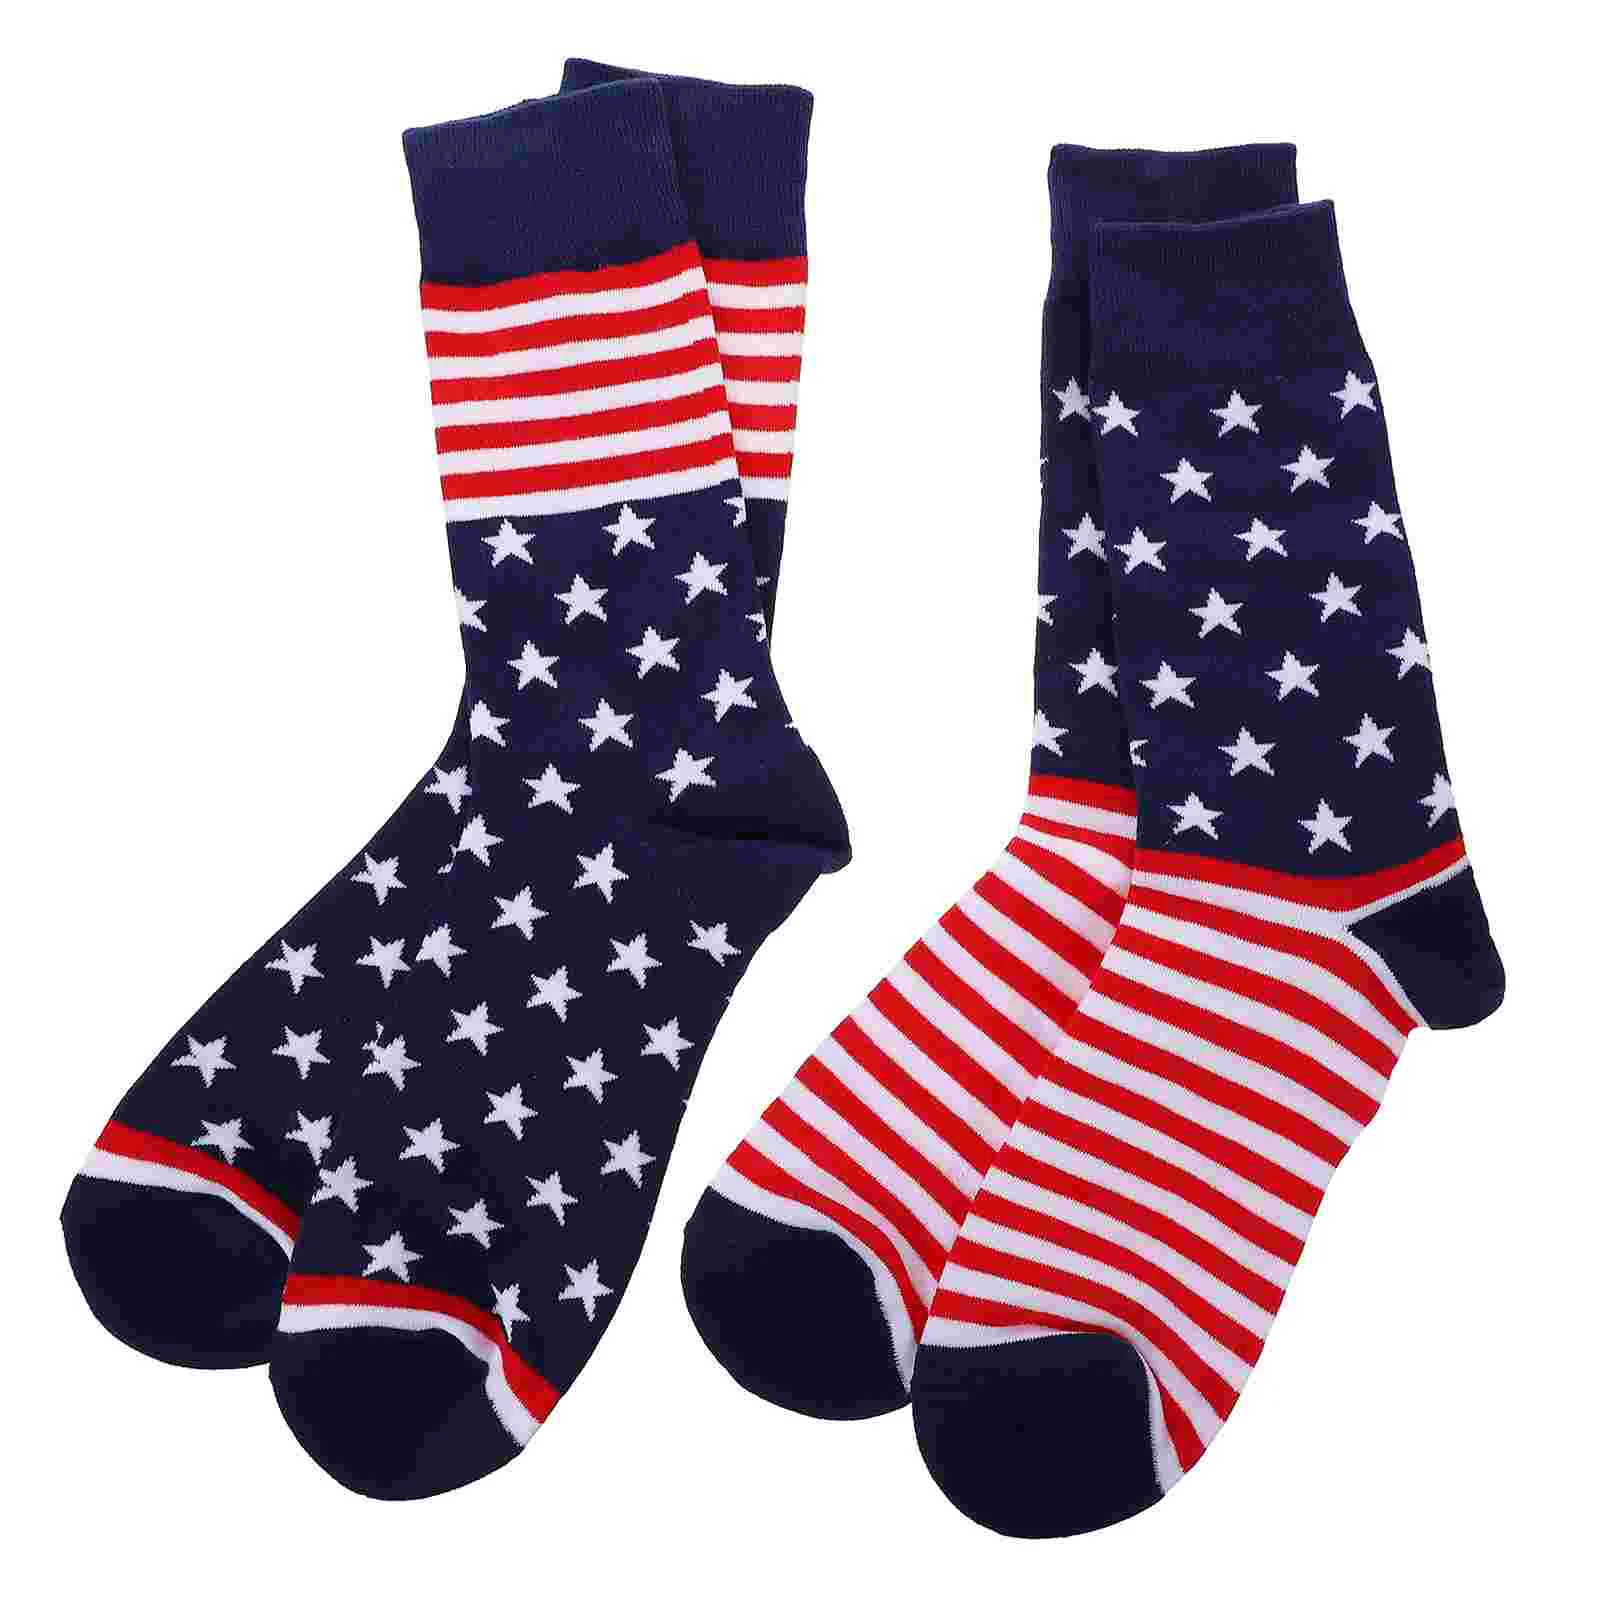 

Чулки в полоску с американским флагом, модные носки, хлопковые носки для мужчин, 2 пары